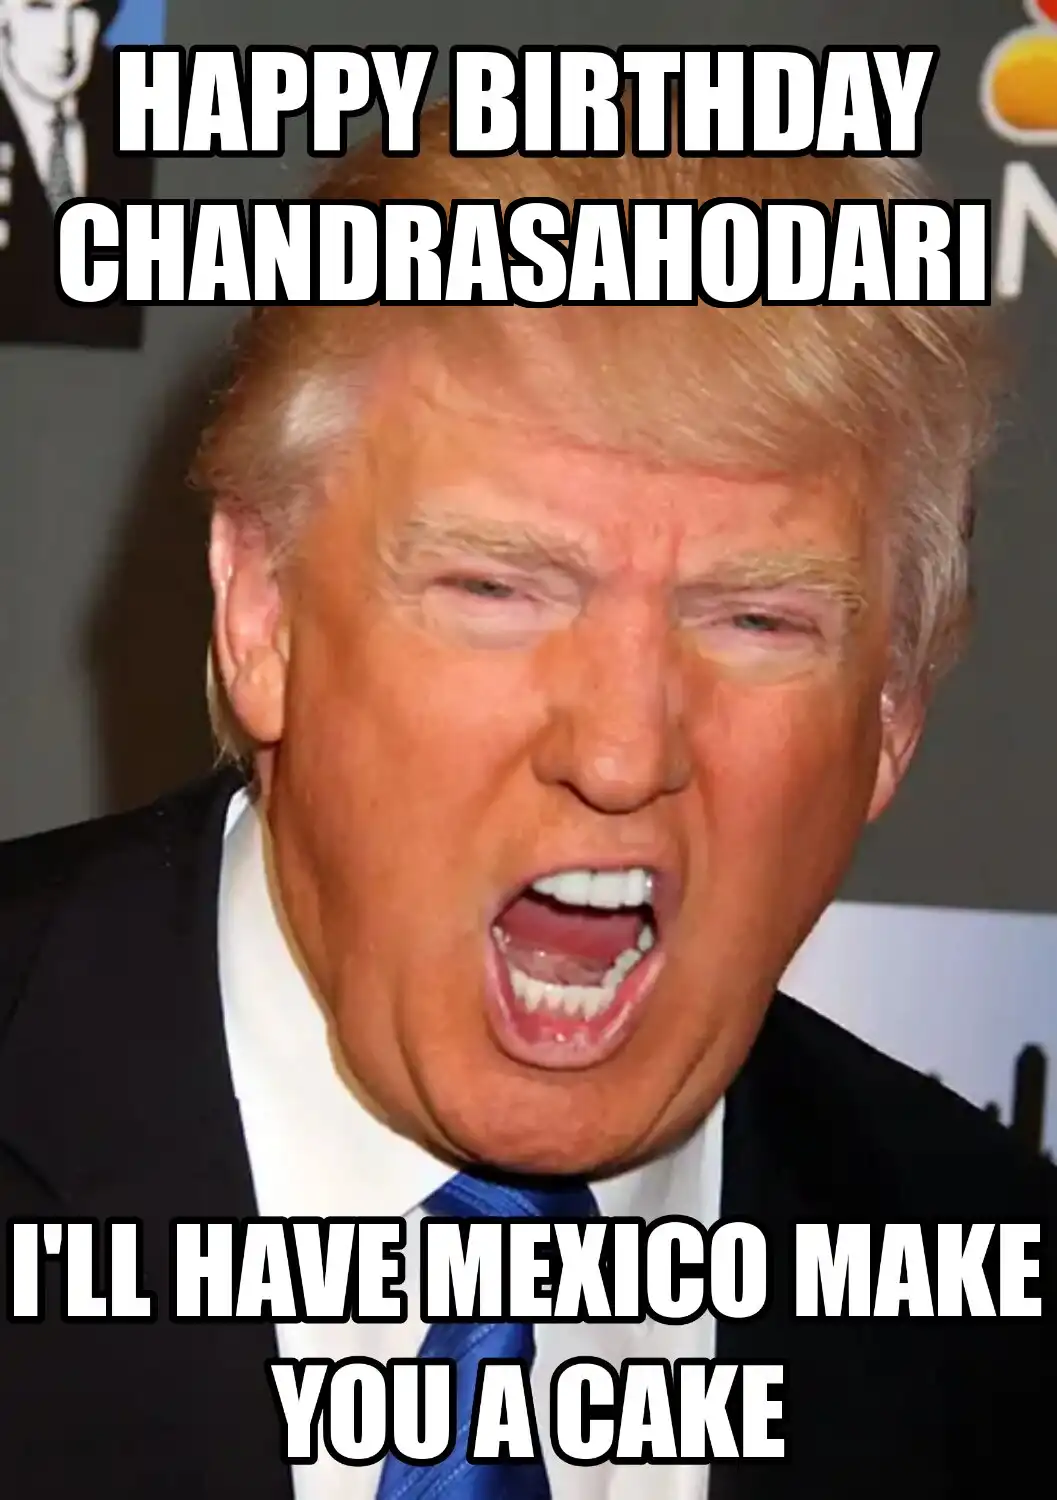 Happy Birthday Chandrasahodari Mexico Make You A Cake Meme